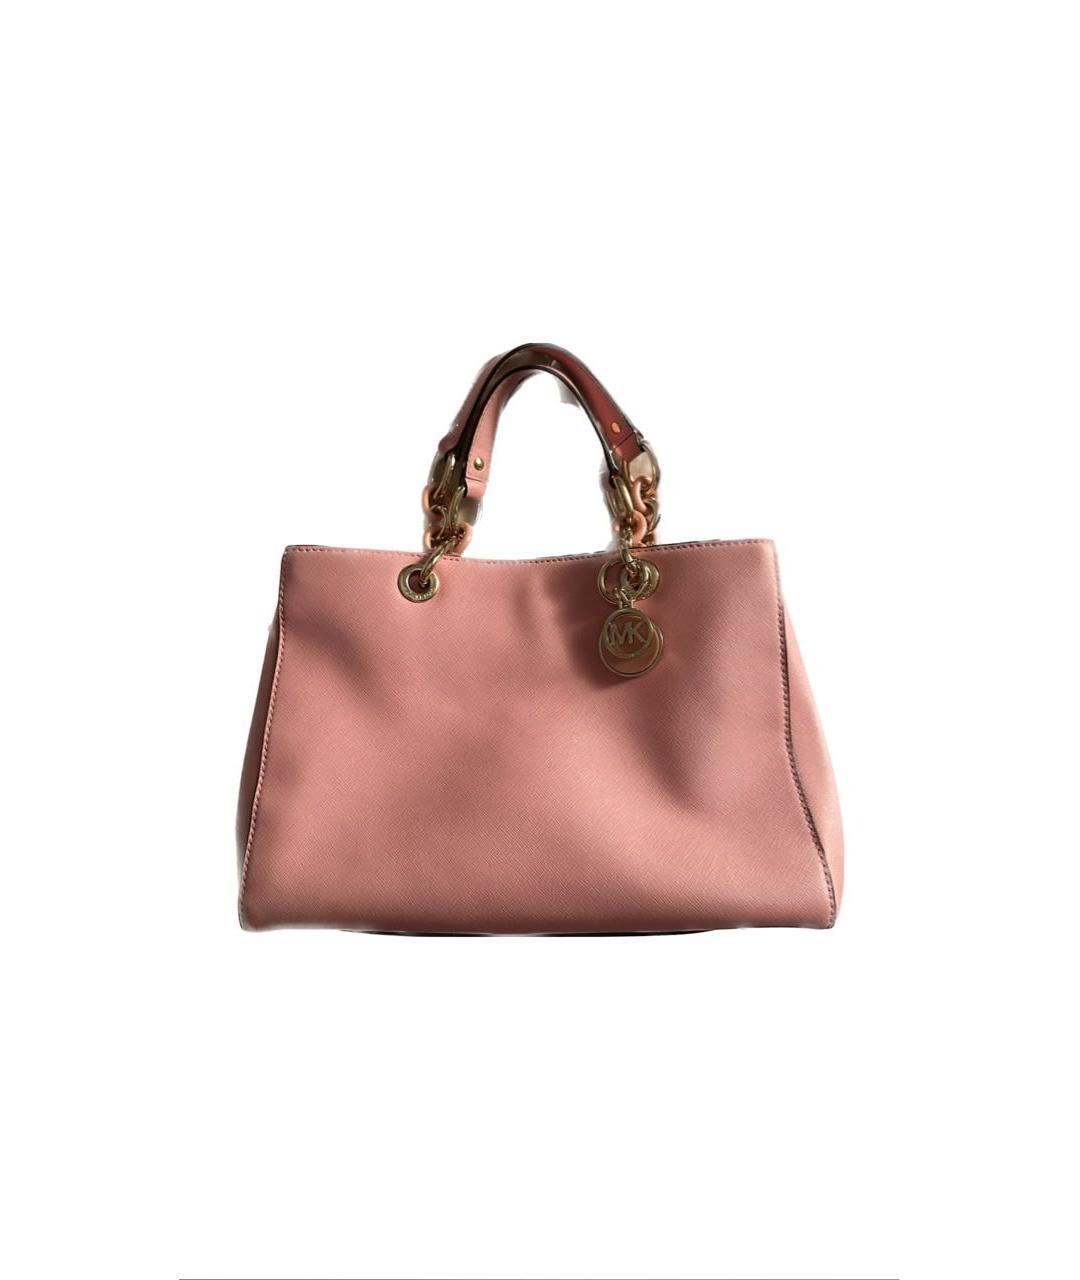 MICHAEL KORS Розовая кожаная сумка с короткими ручками, фото 9